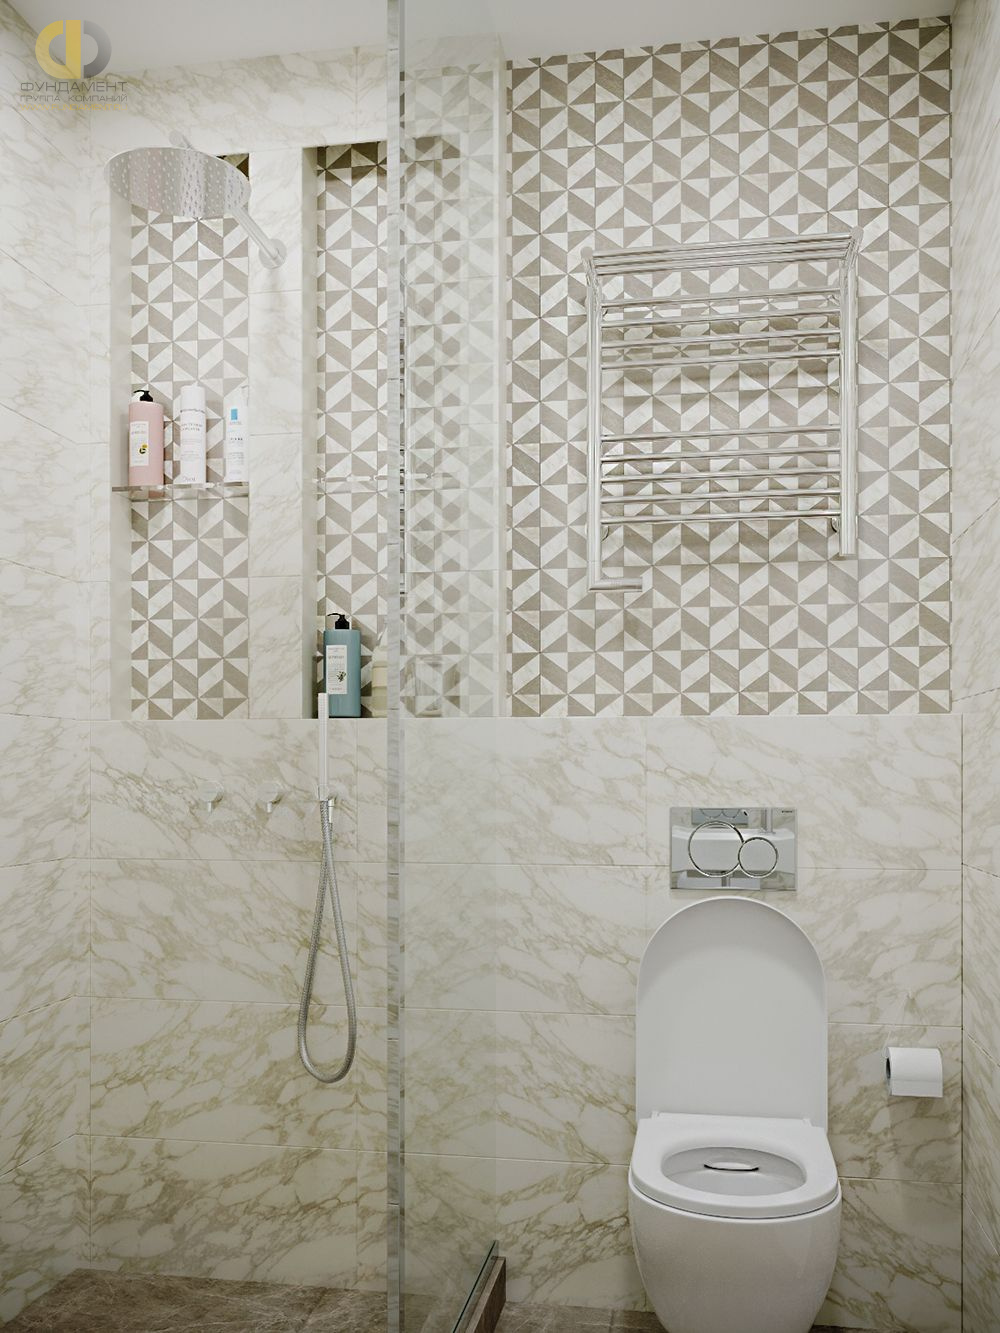 Ванная в стиле дизайна арт-деко (ар-деко) по адресу г. Москва, Павелецкая набережная, д. 8, 2019 года